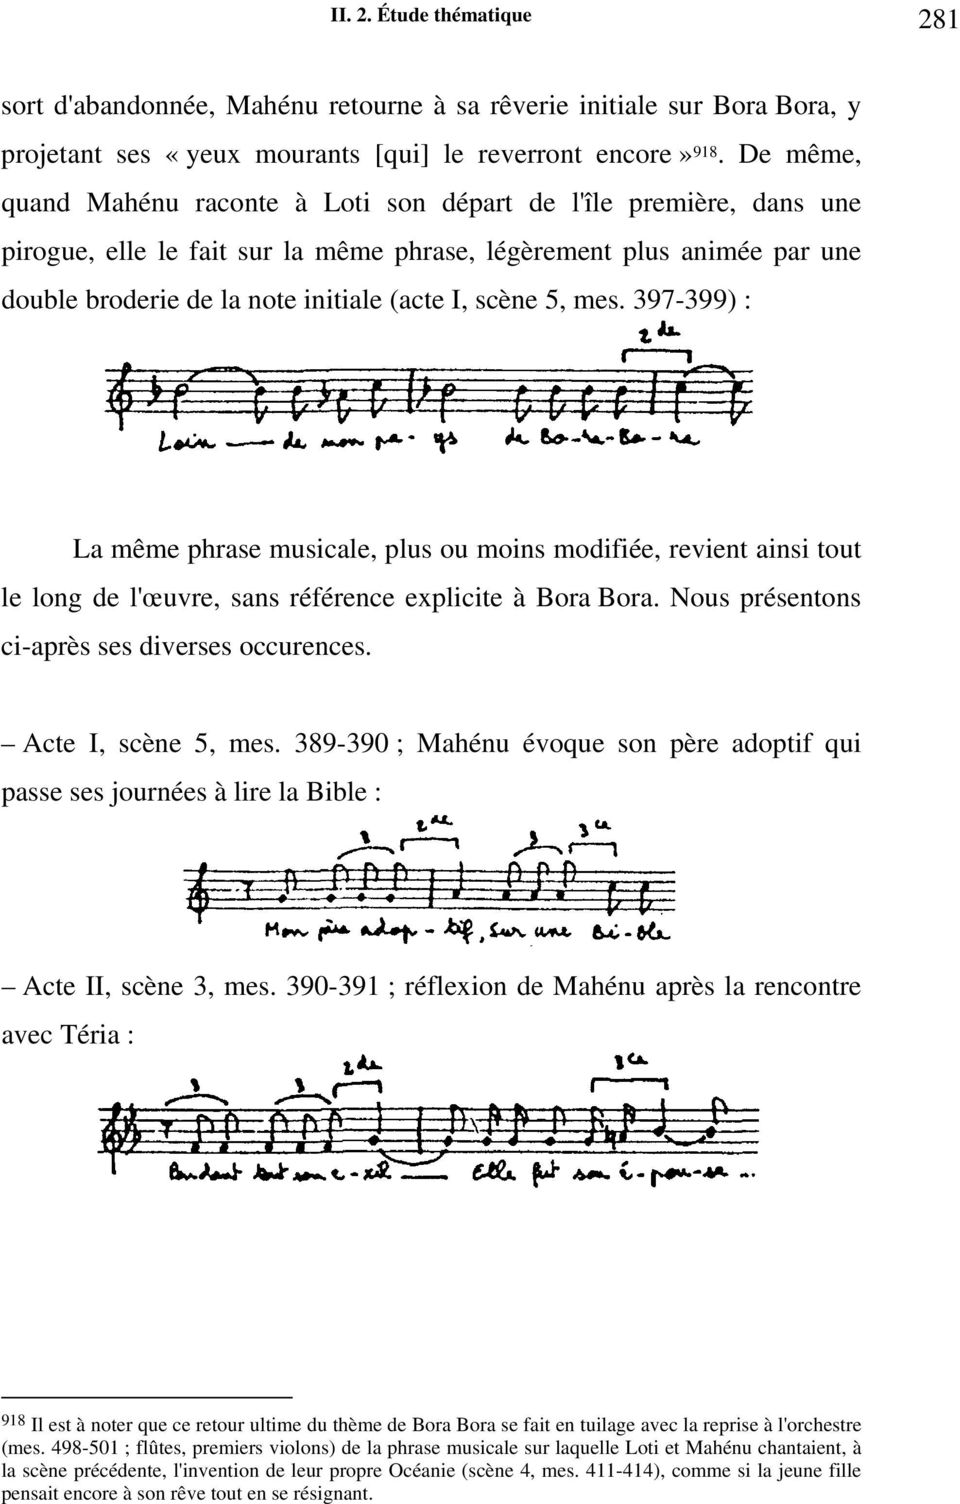 5, mes. 397-399) : La même phrase musicale, plus ou moins modifiée, revient ainsi tout le long de l'œuvre, sans référence explicite à Bora Bora. Nous présentons ci-après ses diverses occurences.